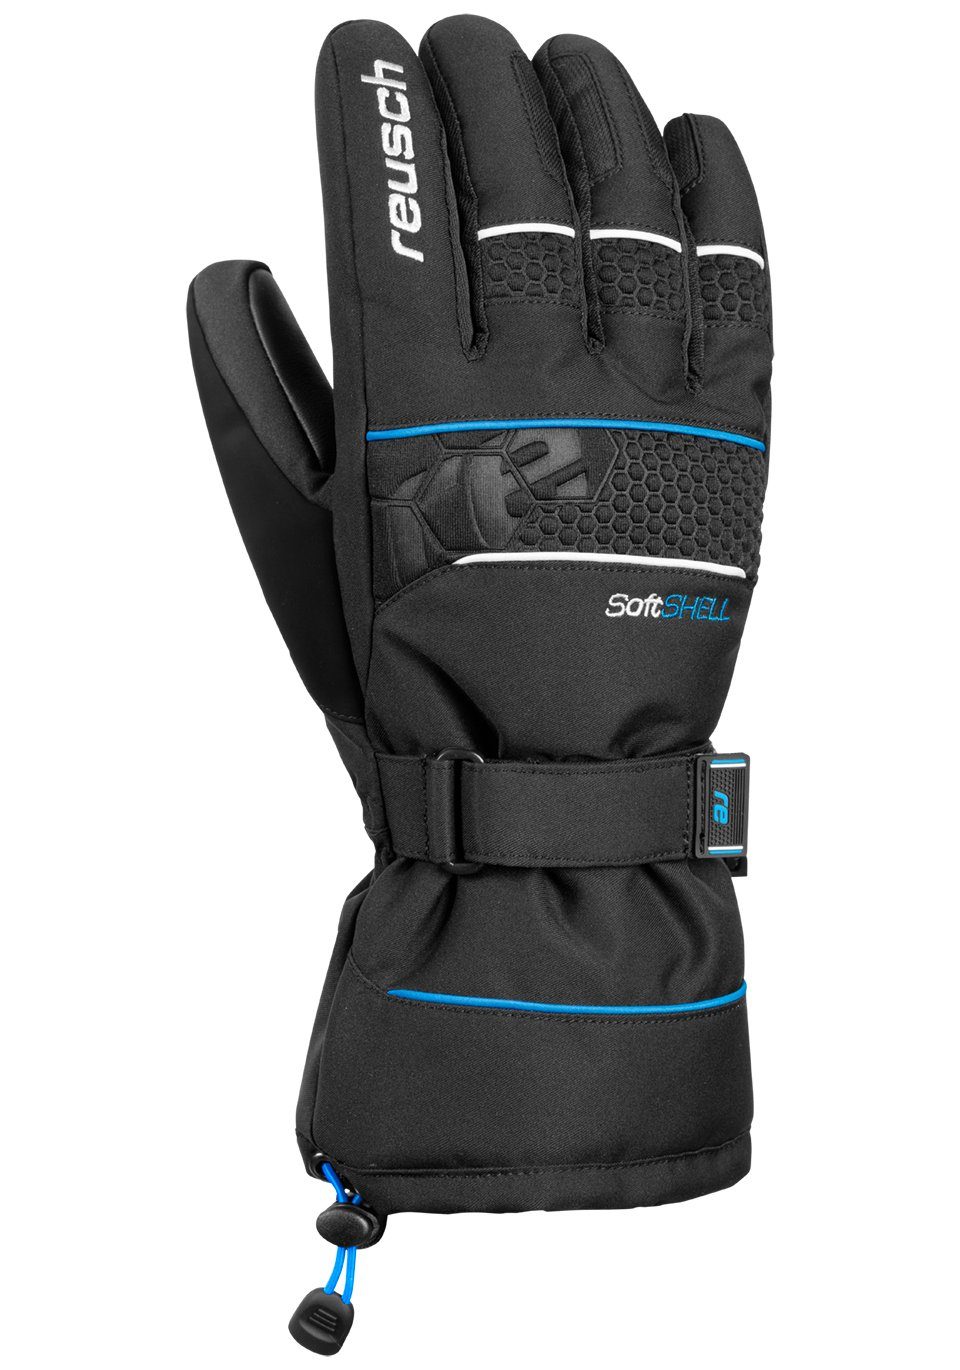 blau-schwarz Design Skihandschuhe XT Connor Reusch sportlichem R-TEX in